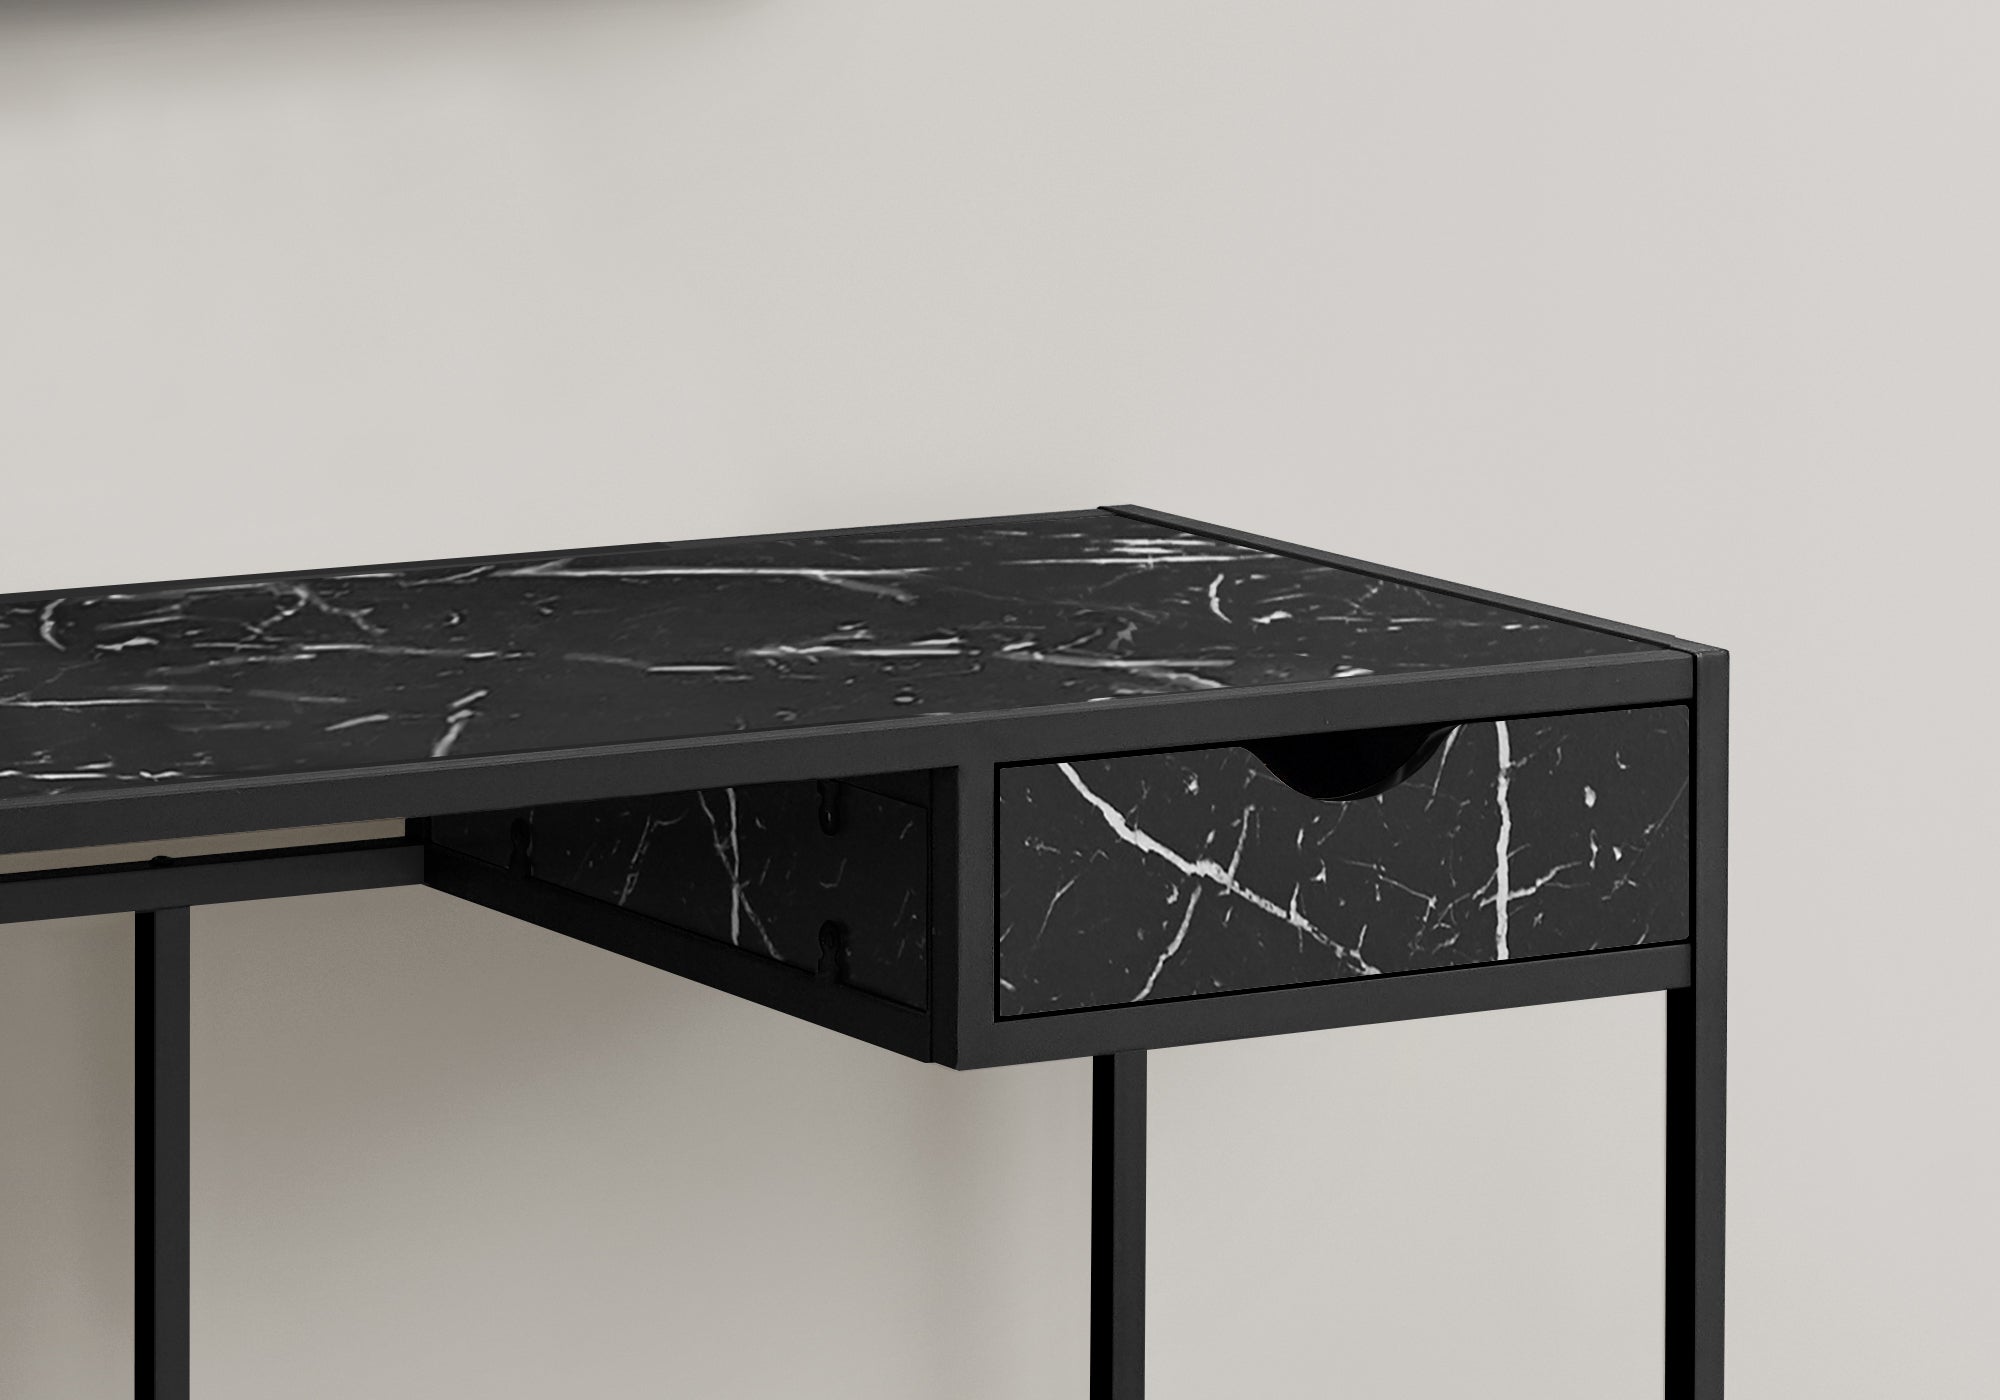 Computer Desk - 42L / Black Marble-Look / Black Metal